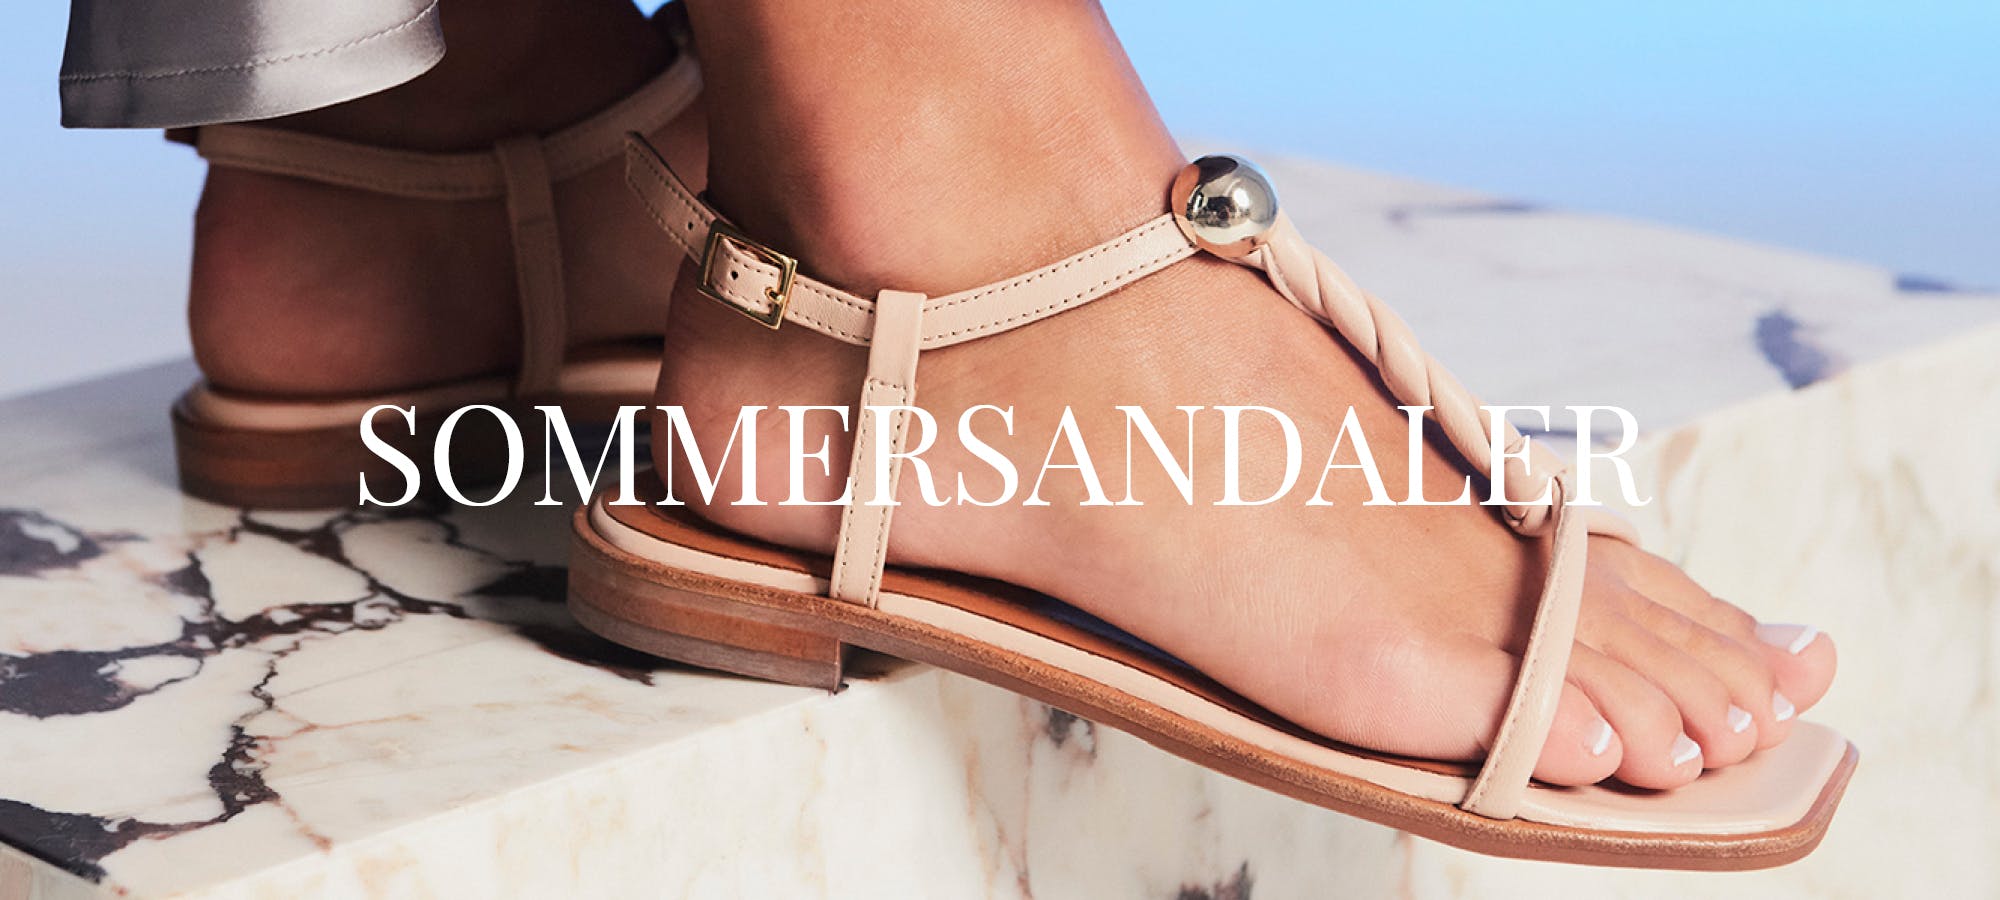 dejligt at møde dig Den fremmede Leonardoda Sommersandaler | Find de bedste sandaler til sommeren | billibi.com